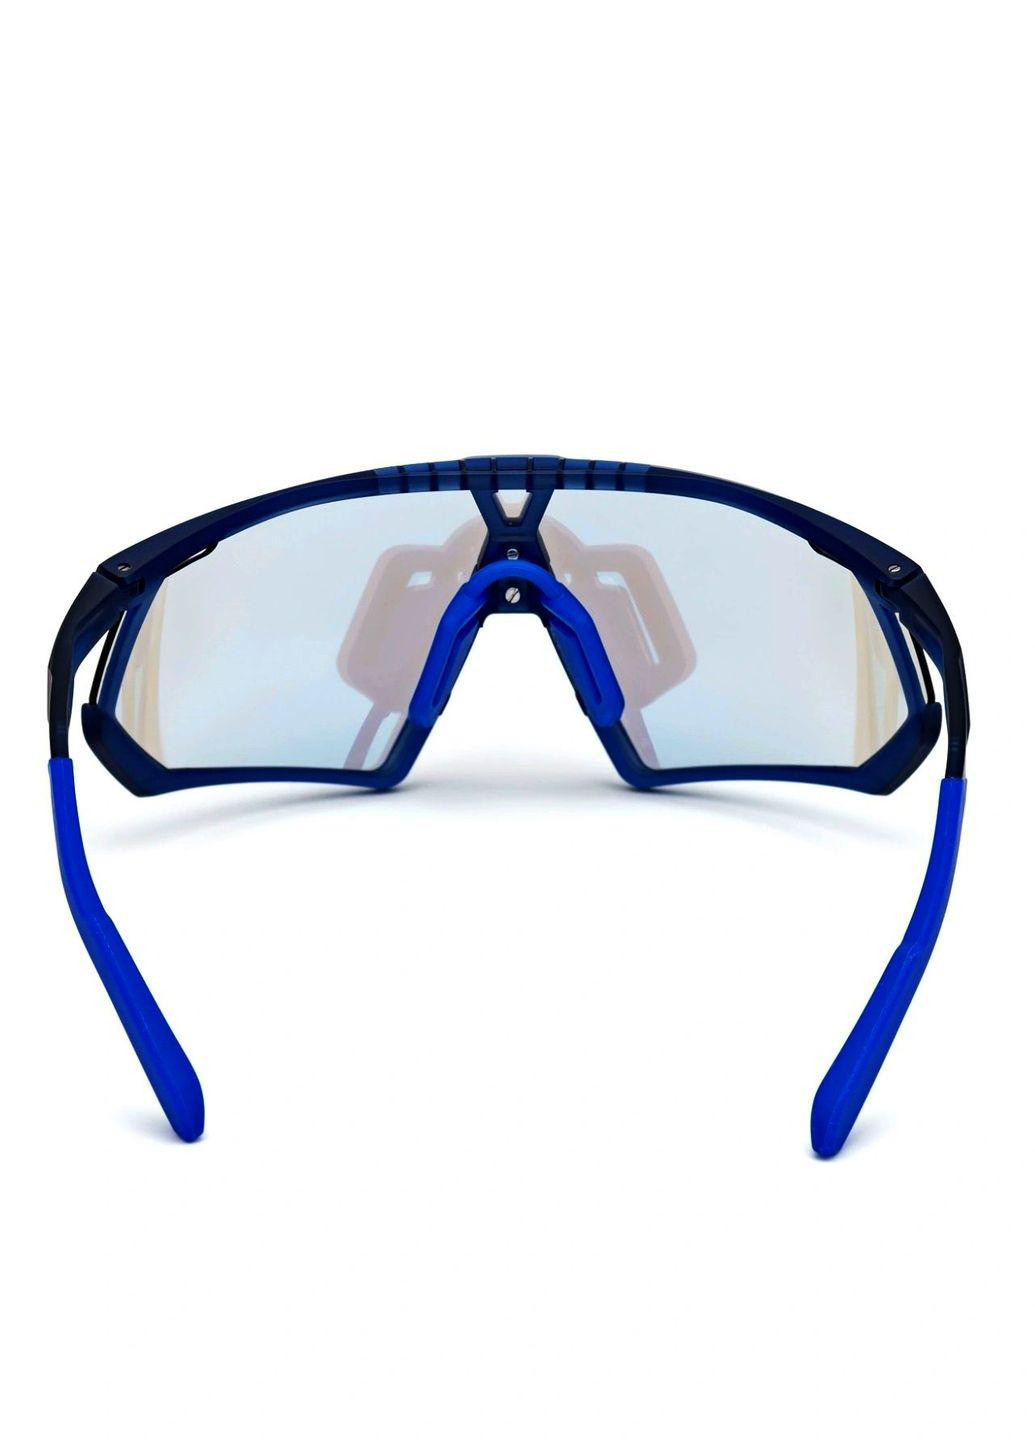 Солнцезащитные очки adidas sp0001 91v (262016243)